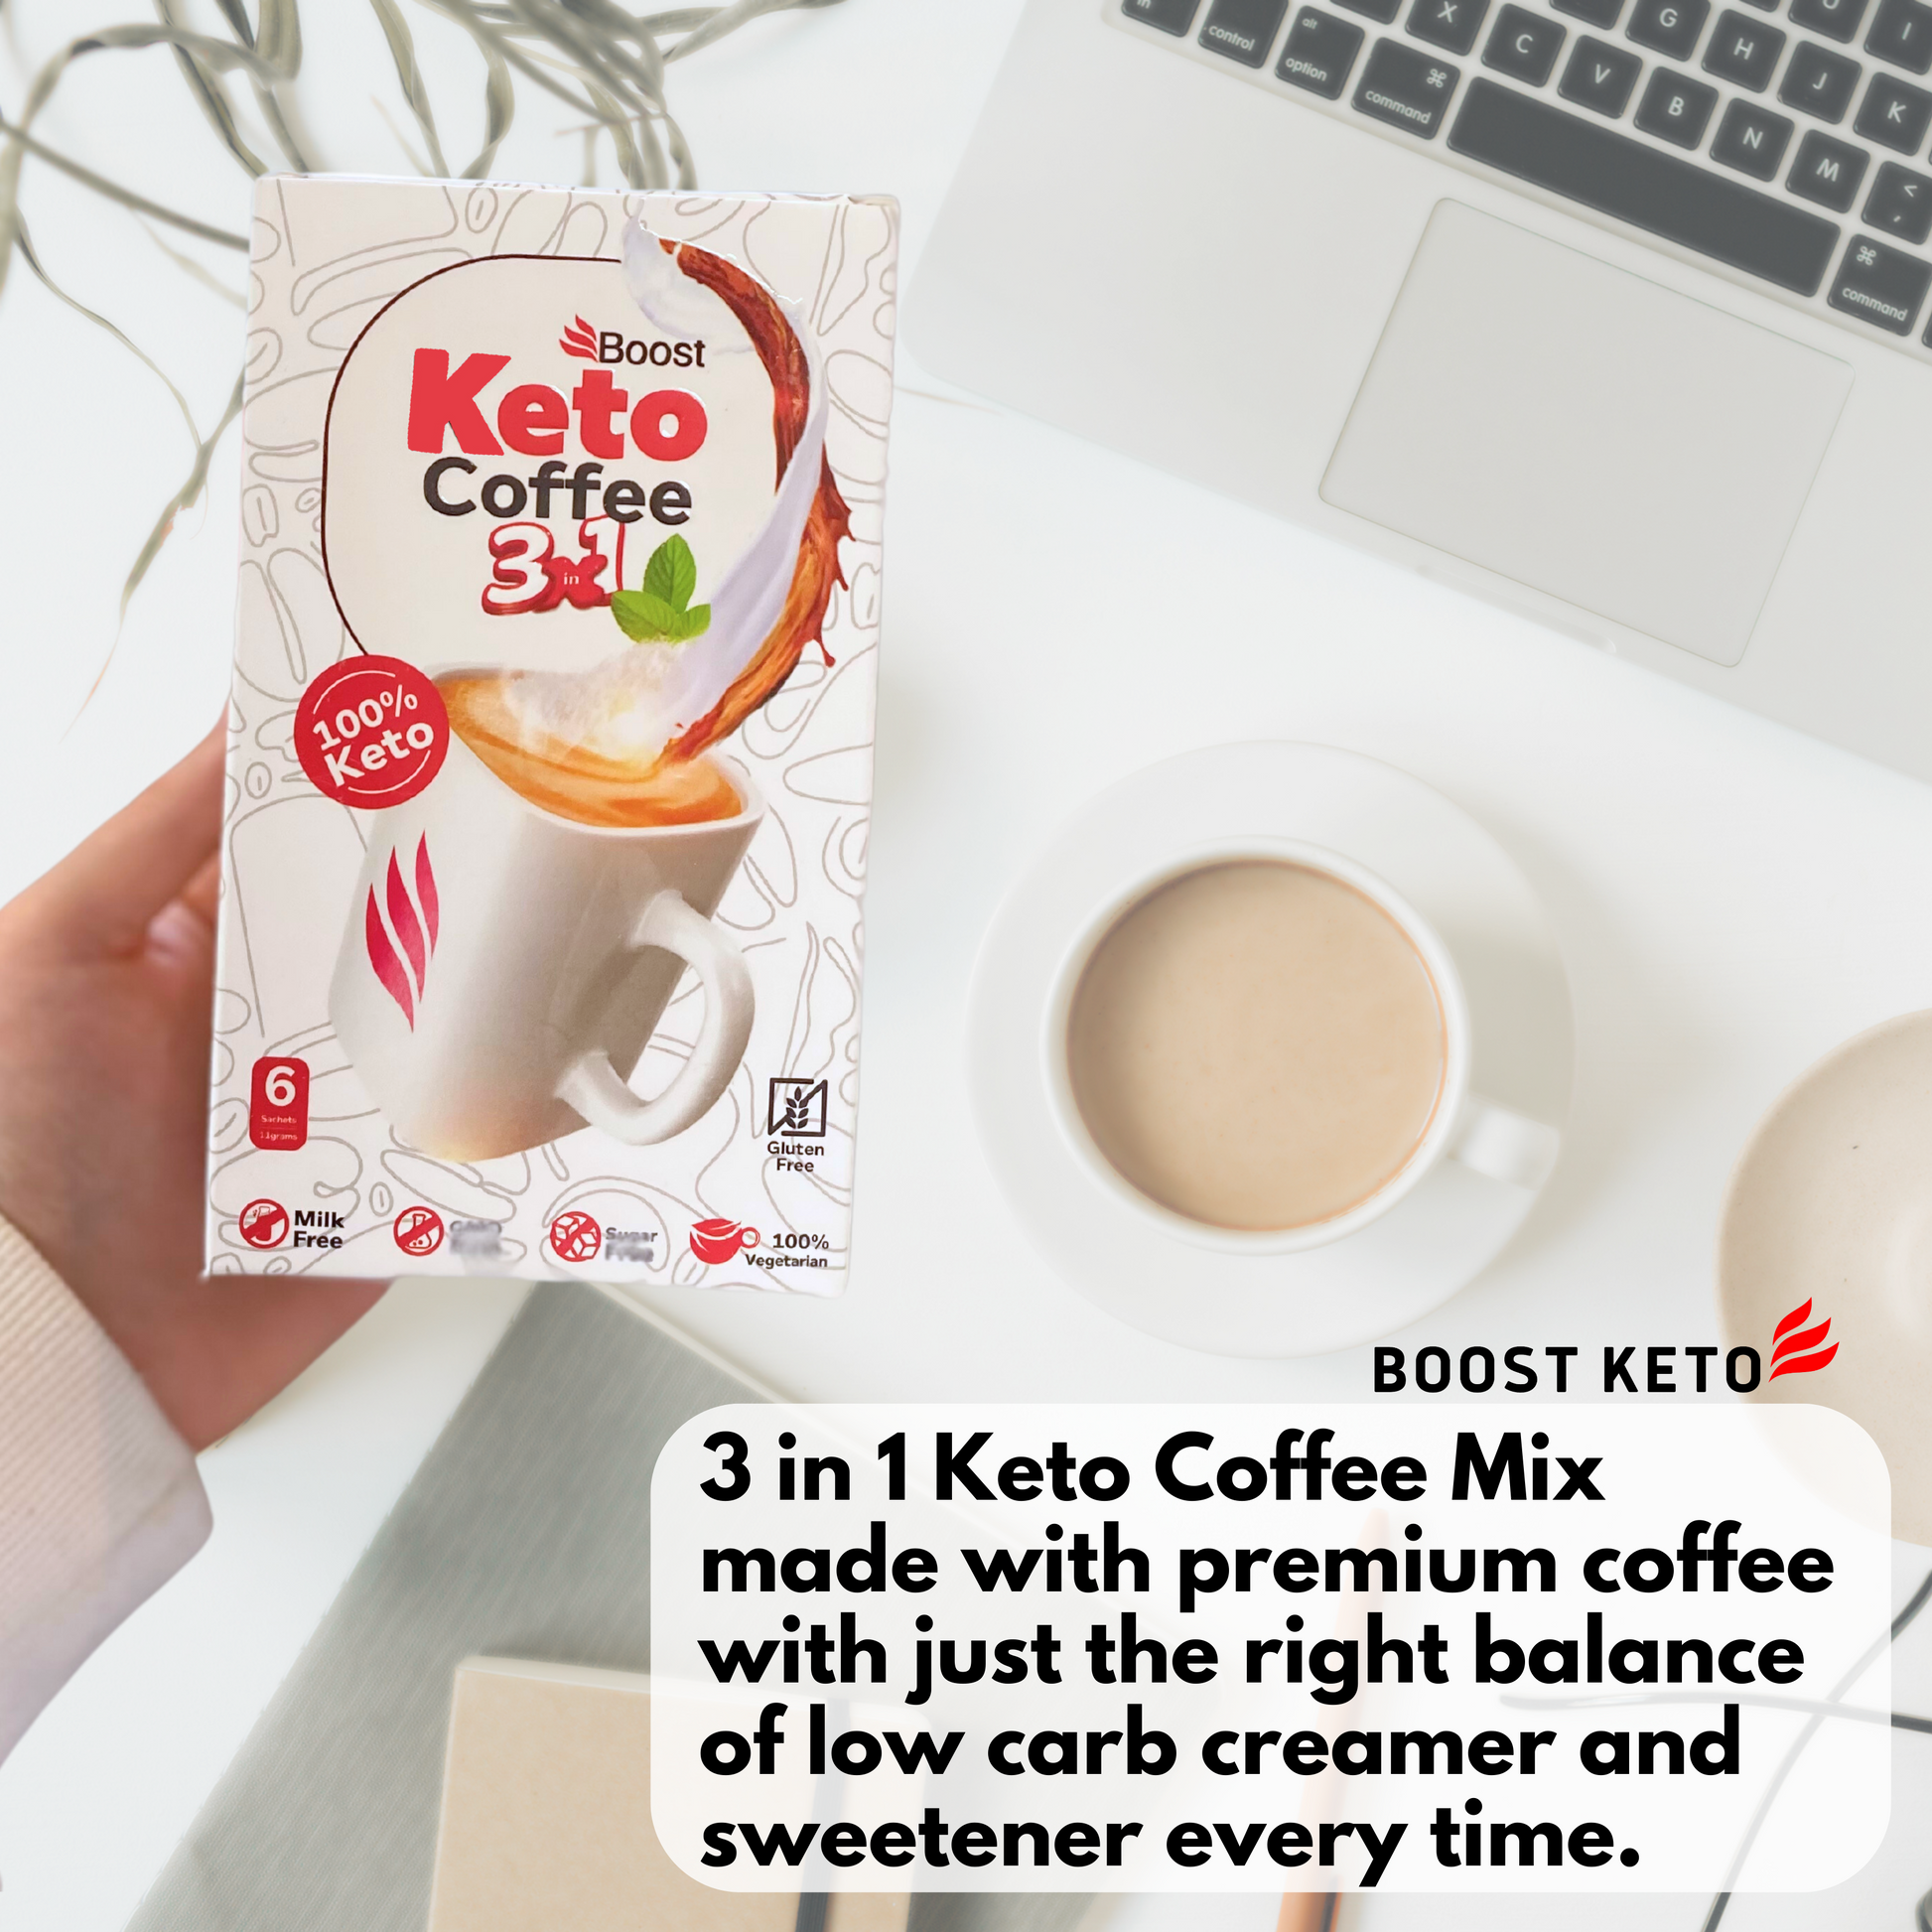 Boost keto 3 in 1 Coffee Mix – Boost Keto